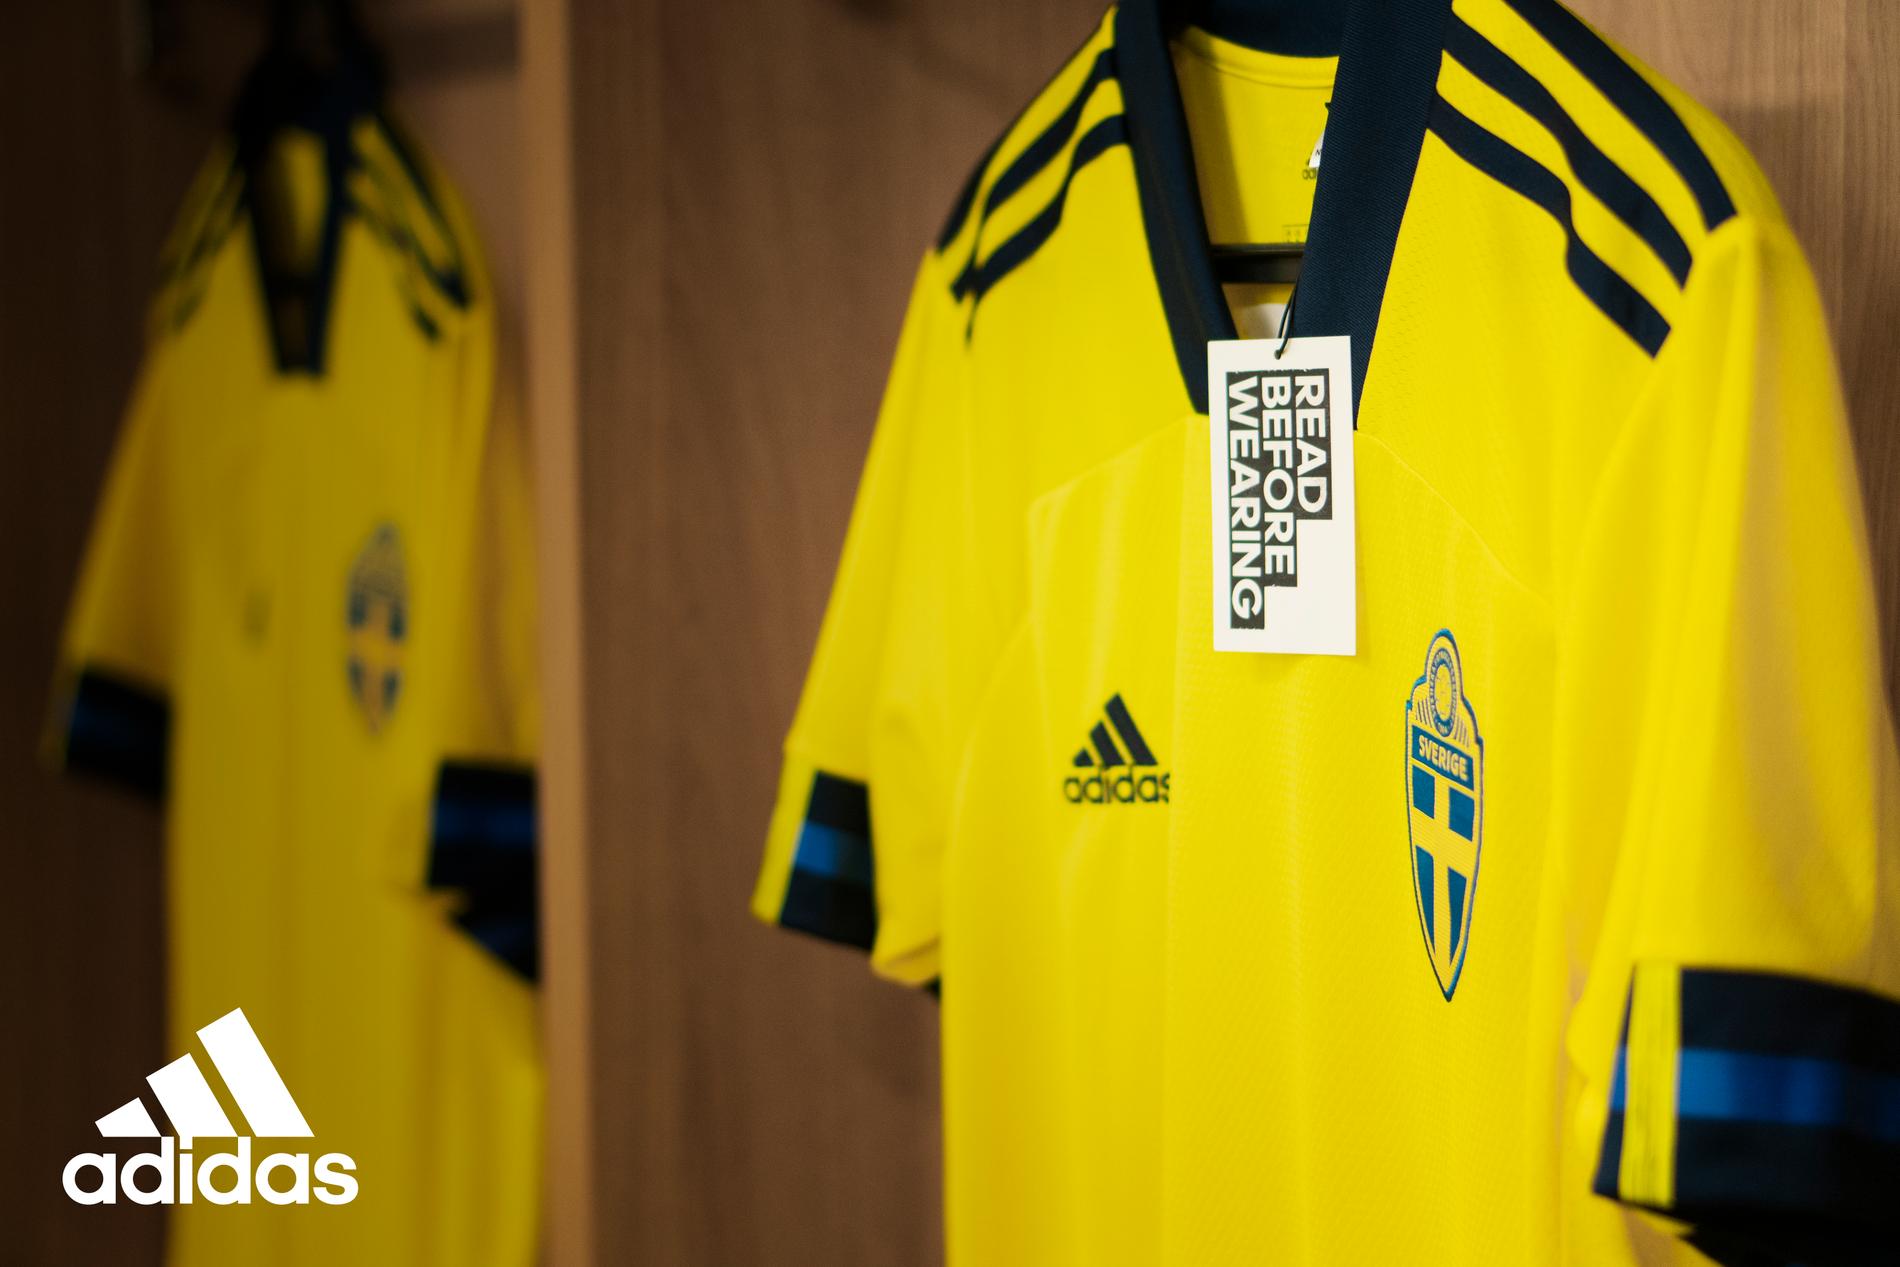 Den som bär årets EM-tröja ska förtjäna den. Villkoren har tagits fram av Adidas i samråd med Svenska Fotbollsförbundet som en markering mot de problem som finns kring hat och hot och som drabbar spelare, tränare och supportar. 